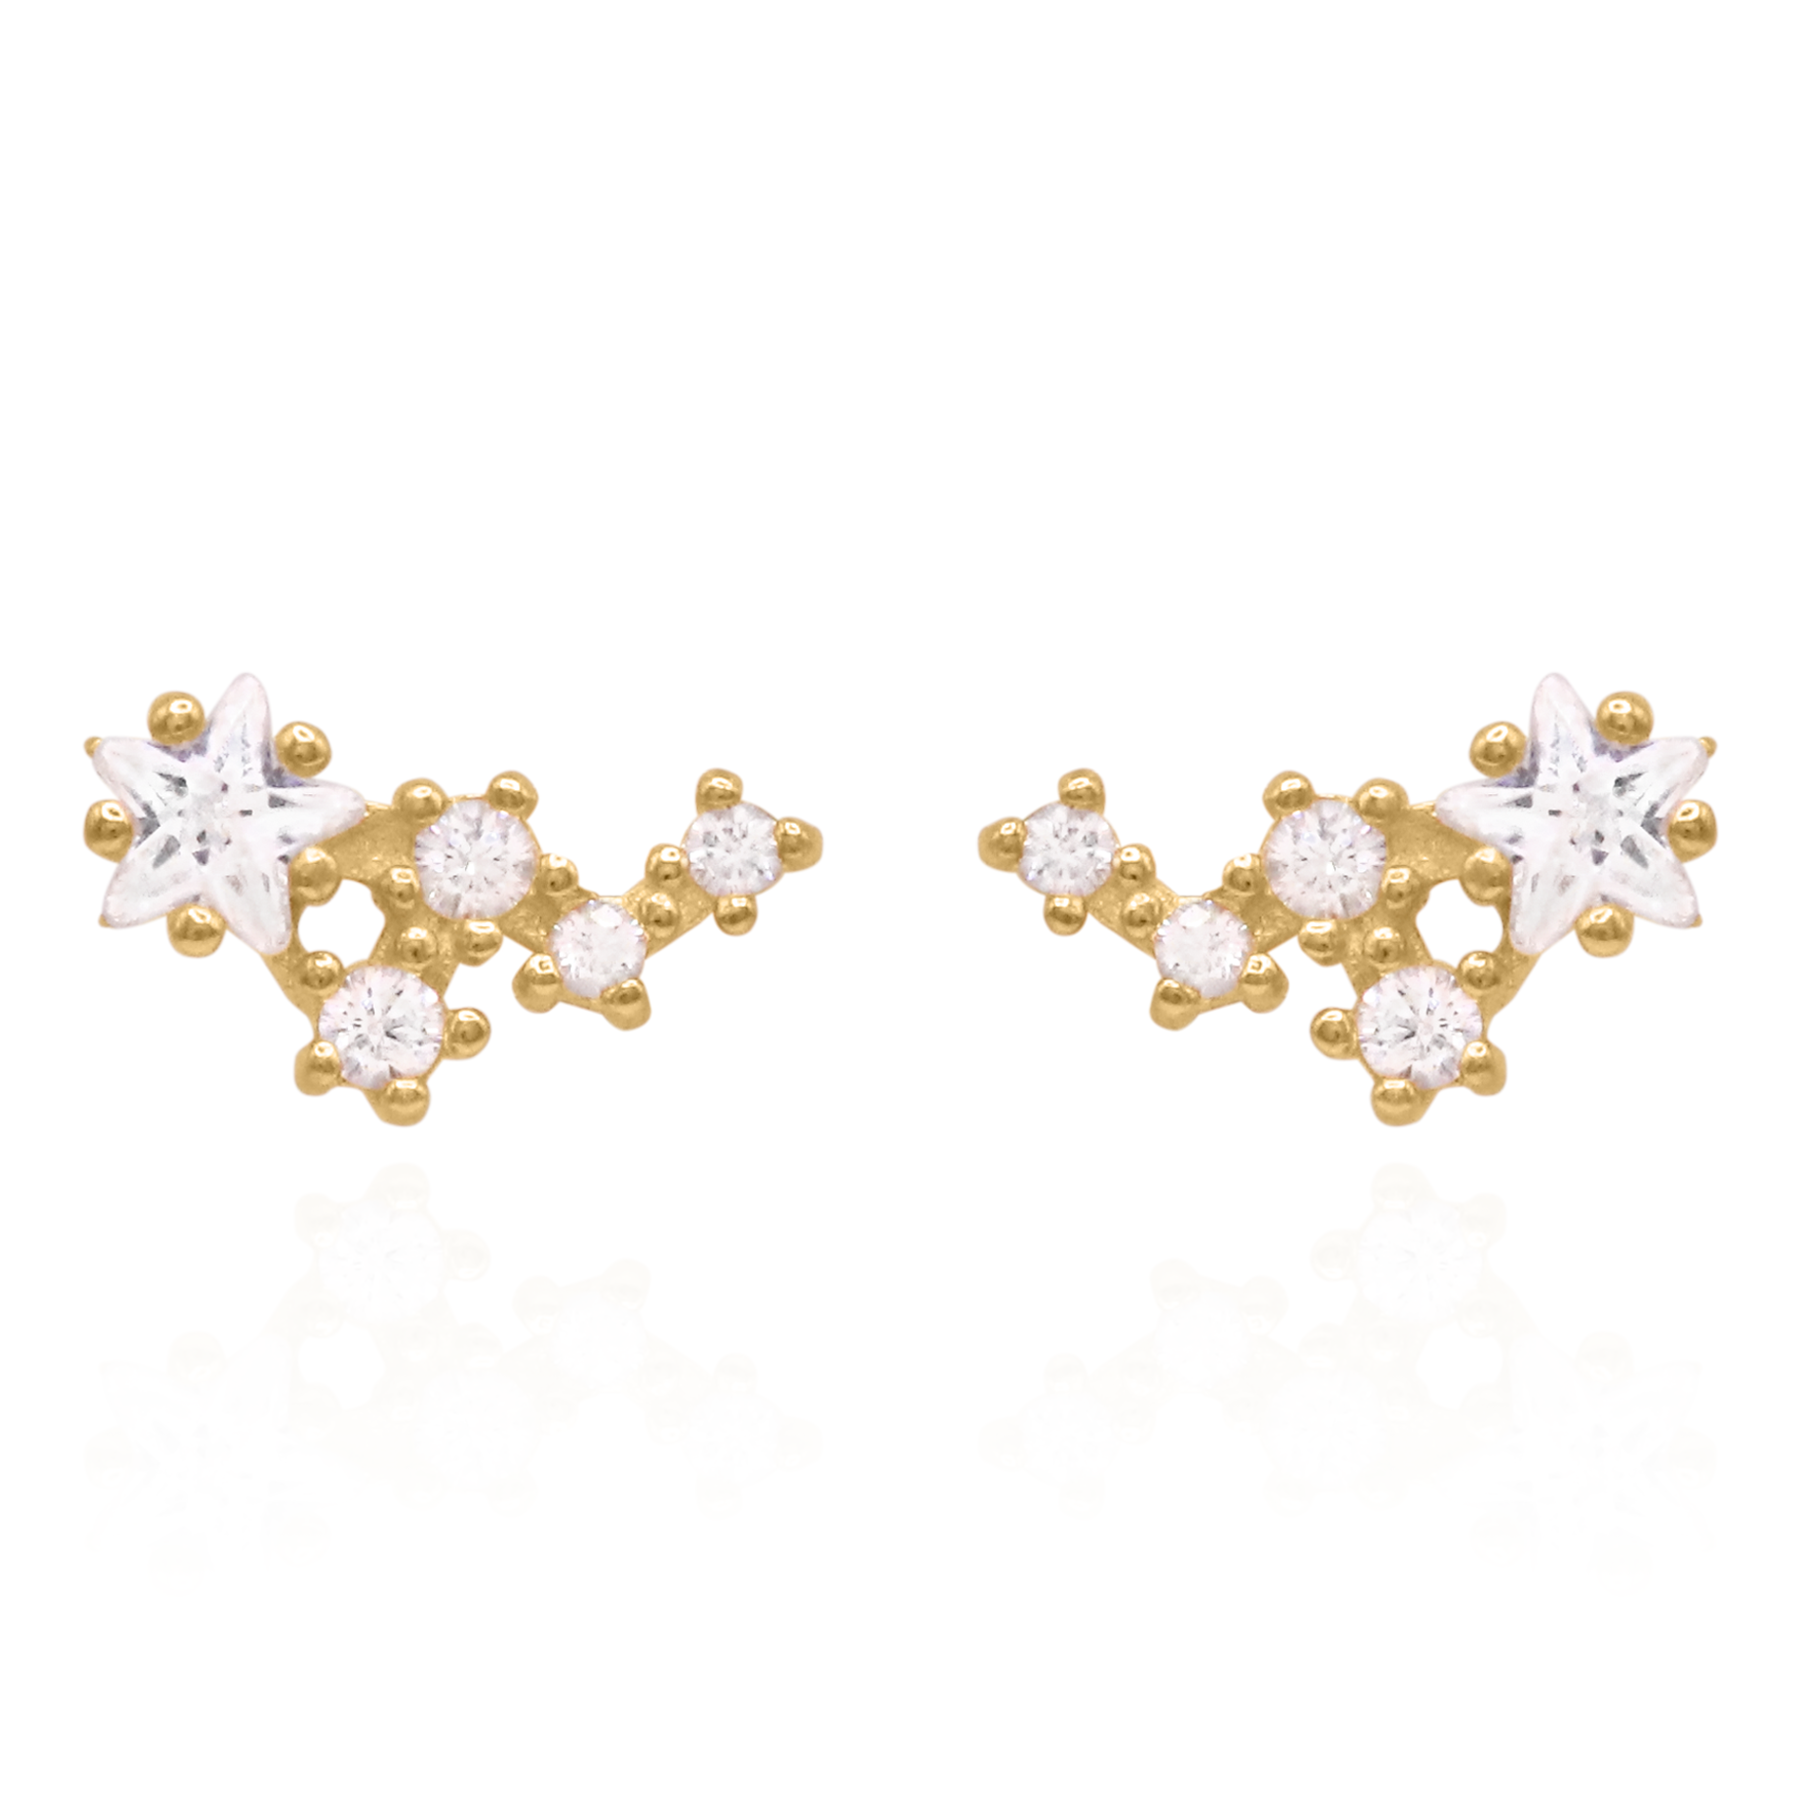 Celeste Star Cluster Stud Earrings | 14K Gold Plated